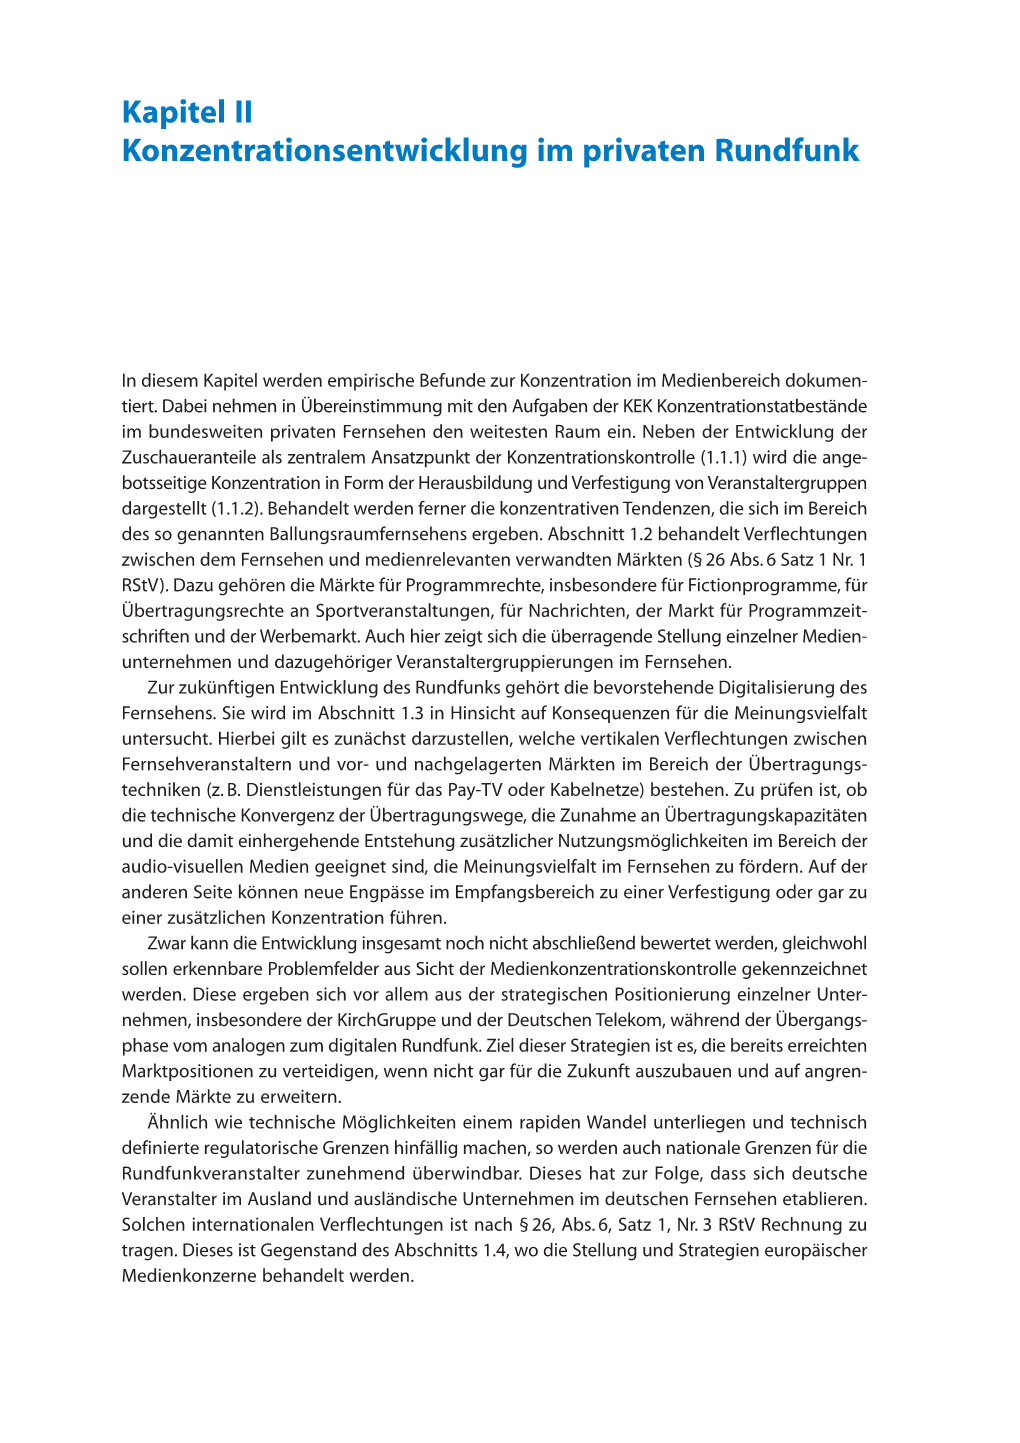 PDF-Download (Kapitel II: Konzentrationsentwicklung Im